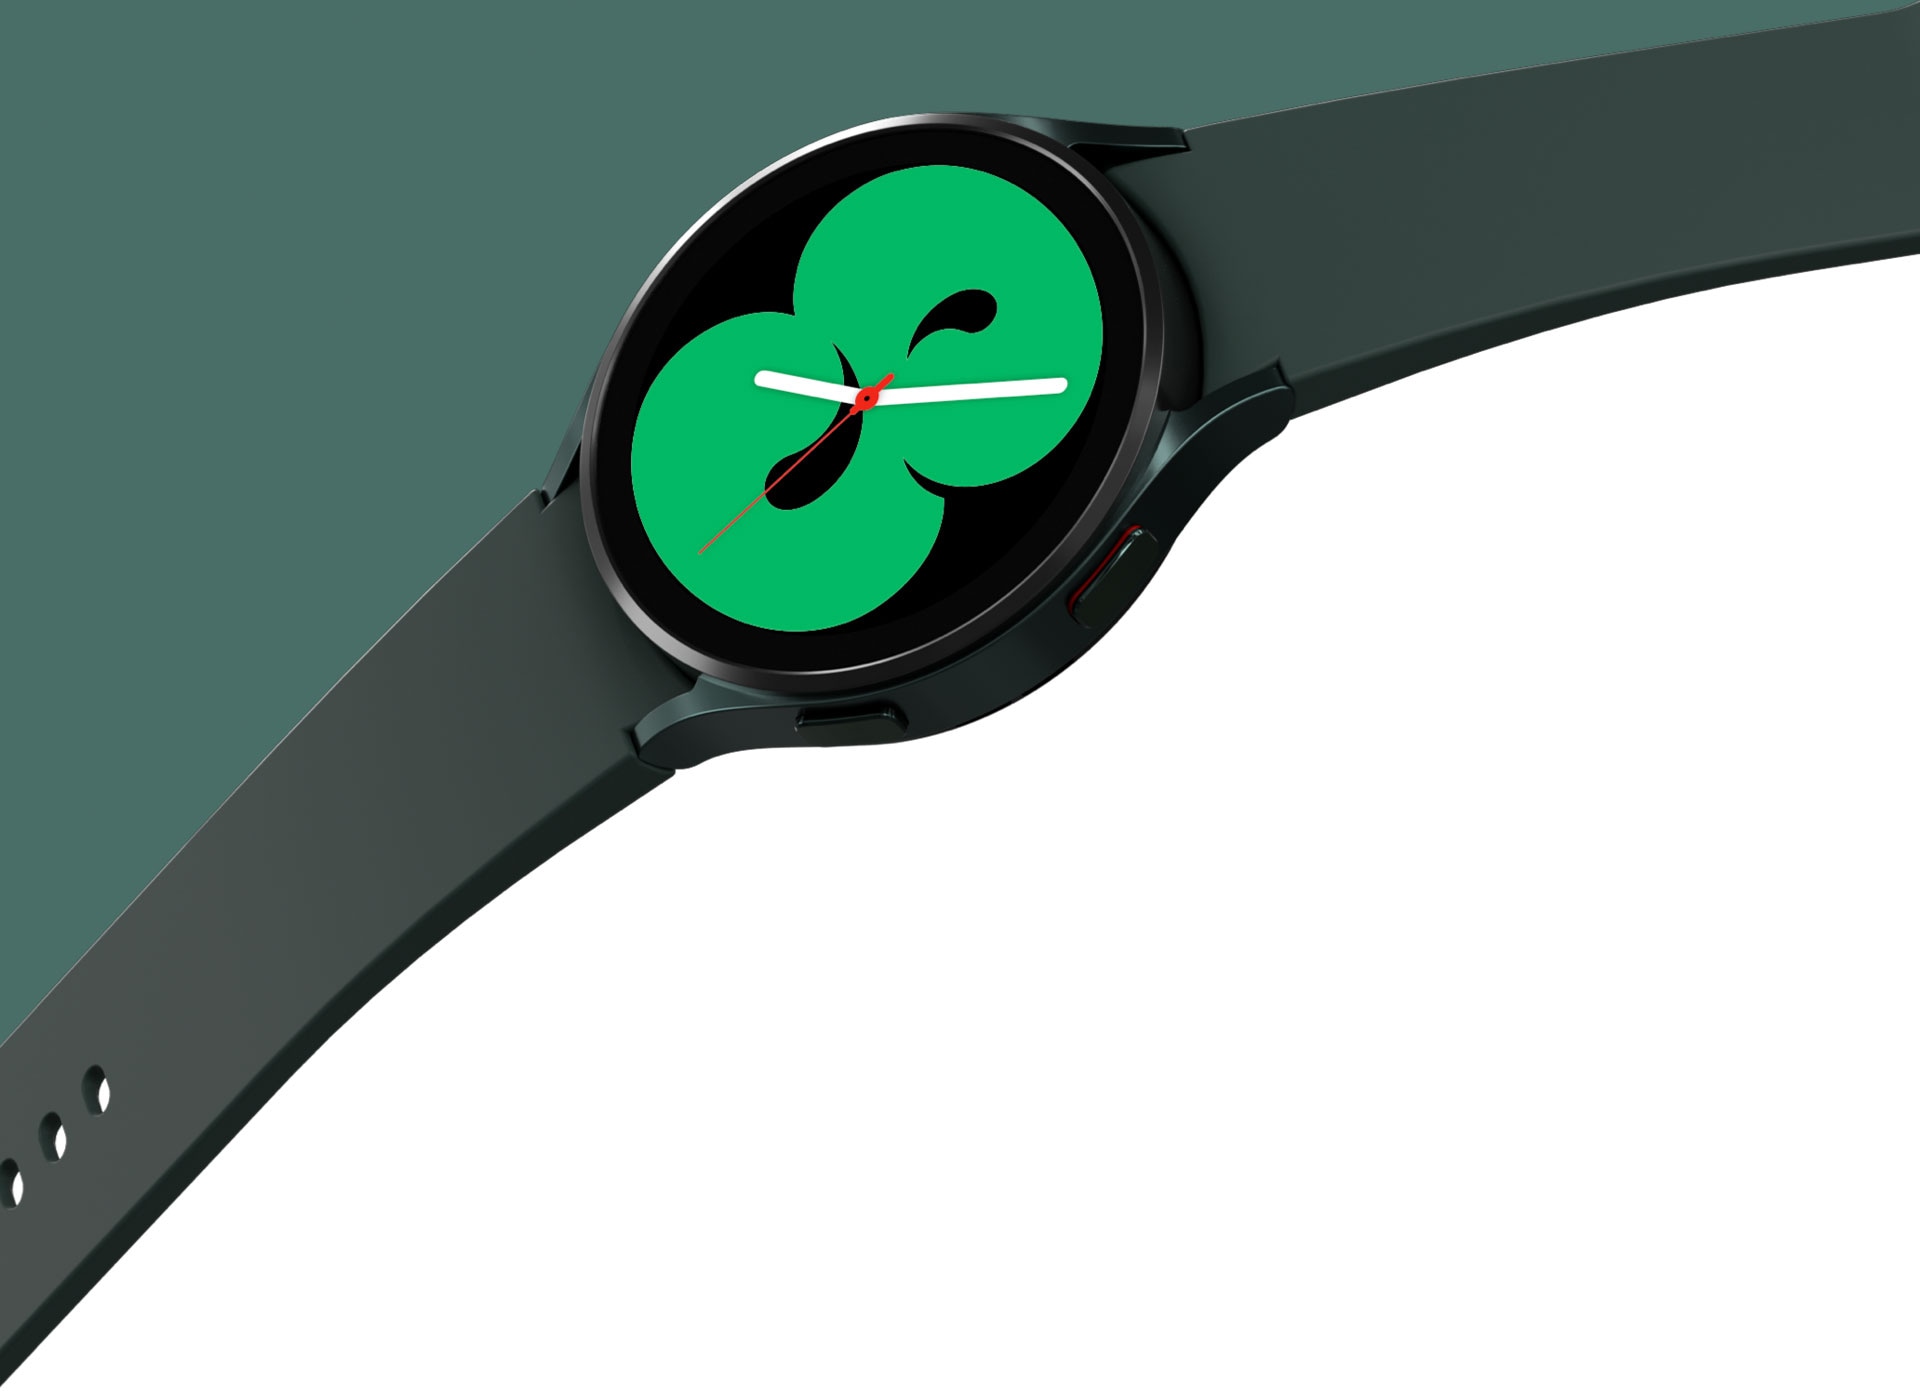 Man sieht eine grüne Galaxy Watch4 wird mit einem offenen Armband. Das Ziffernblatt zeigt eines der Designs, bei dem die Uhrzeit in grüner Farbe angezeigt wird.